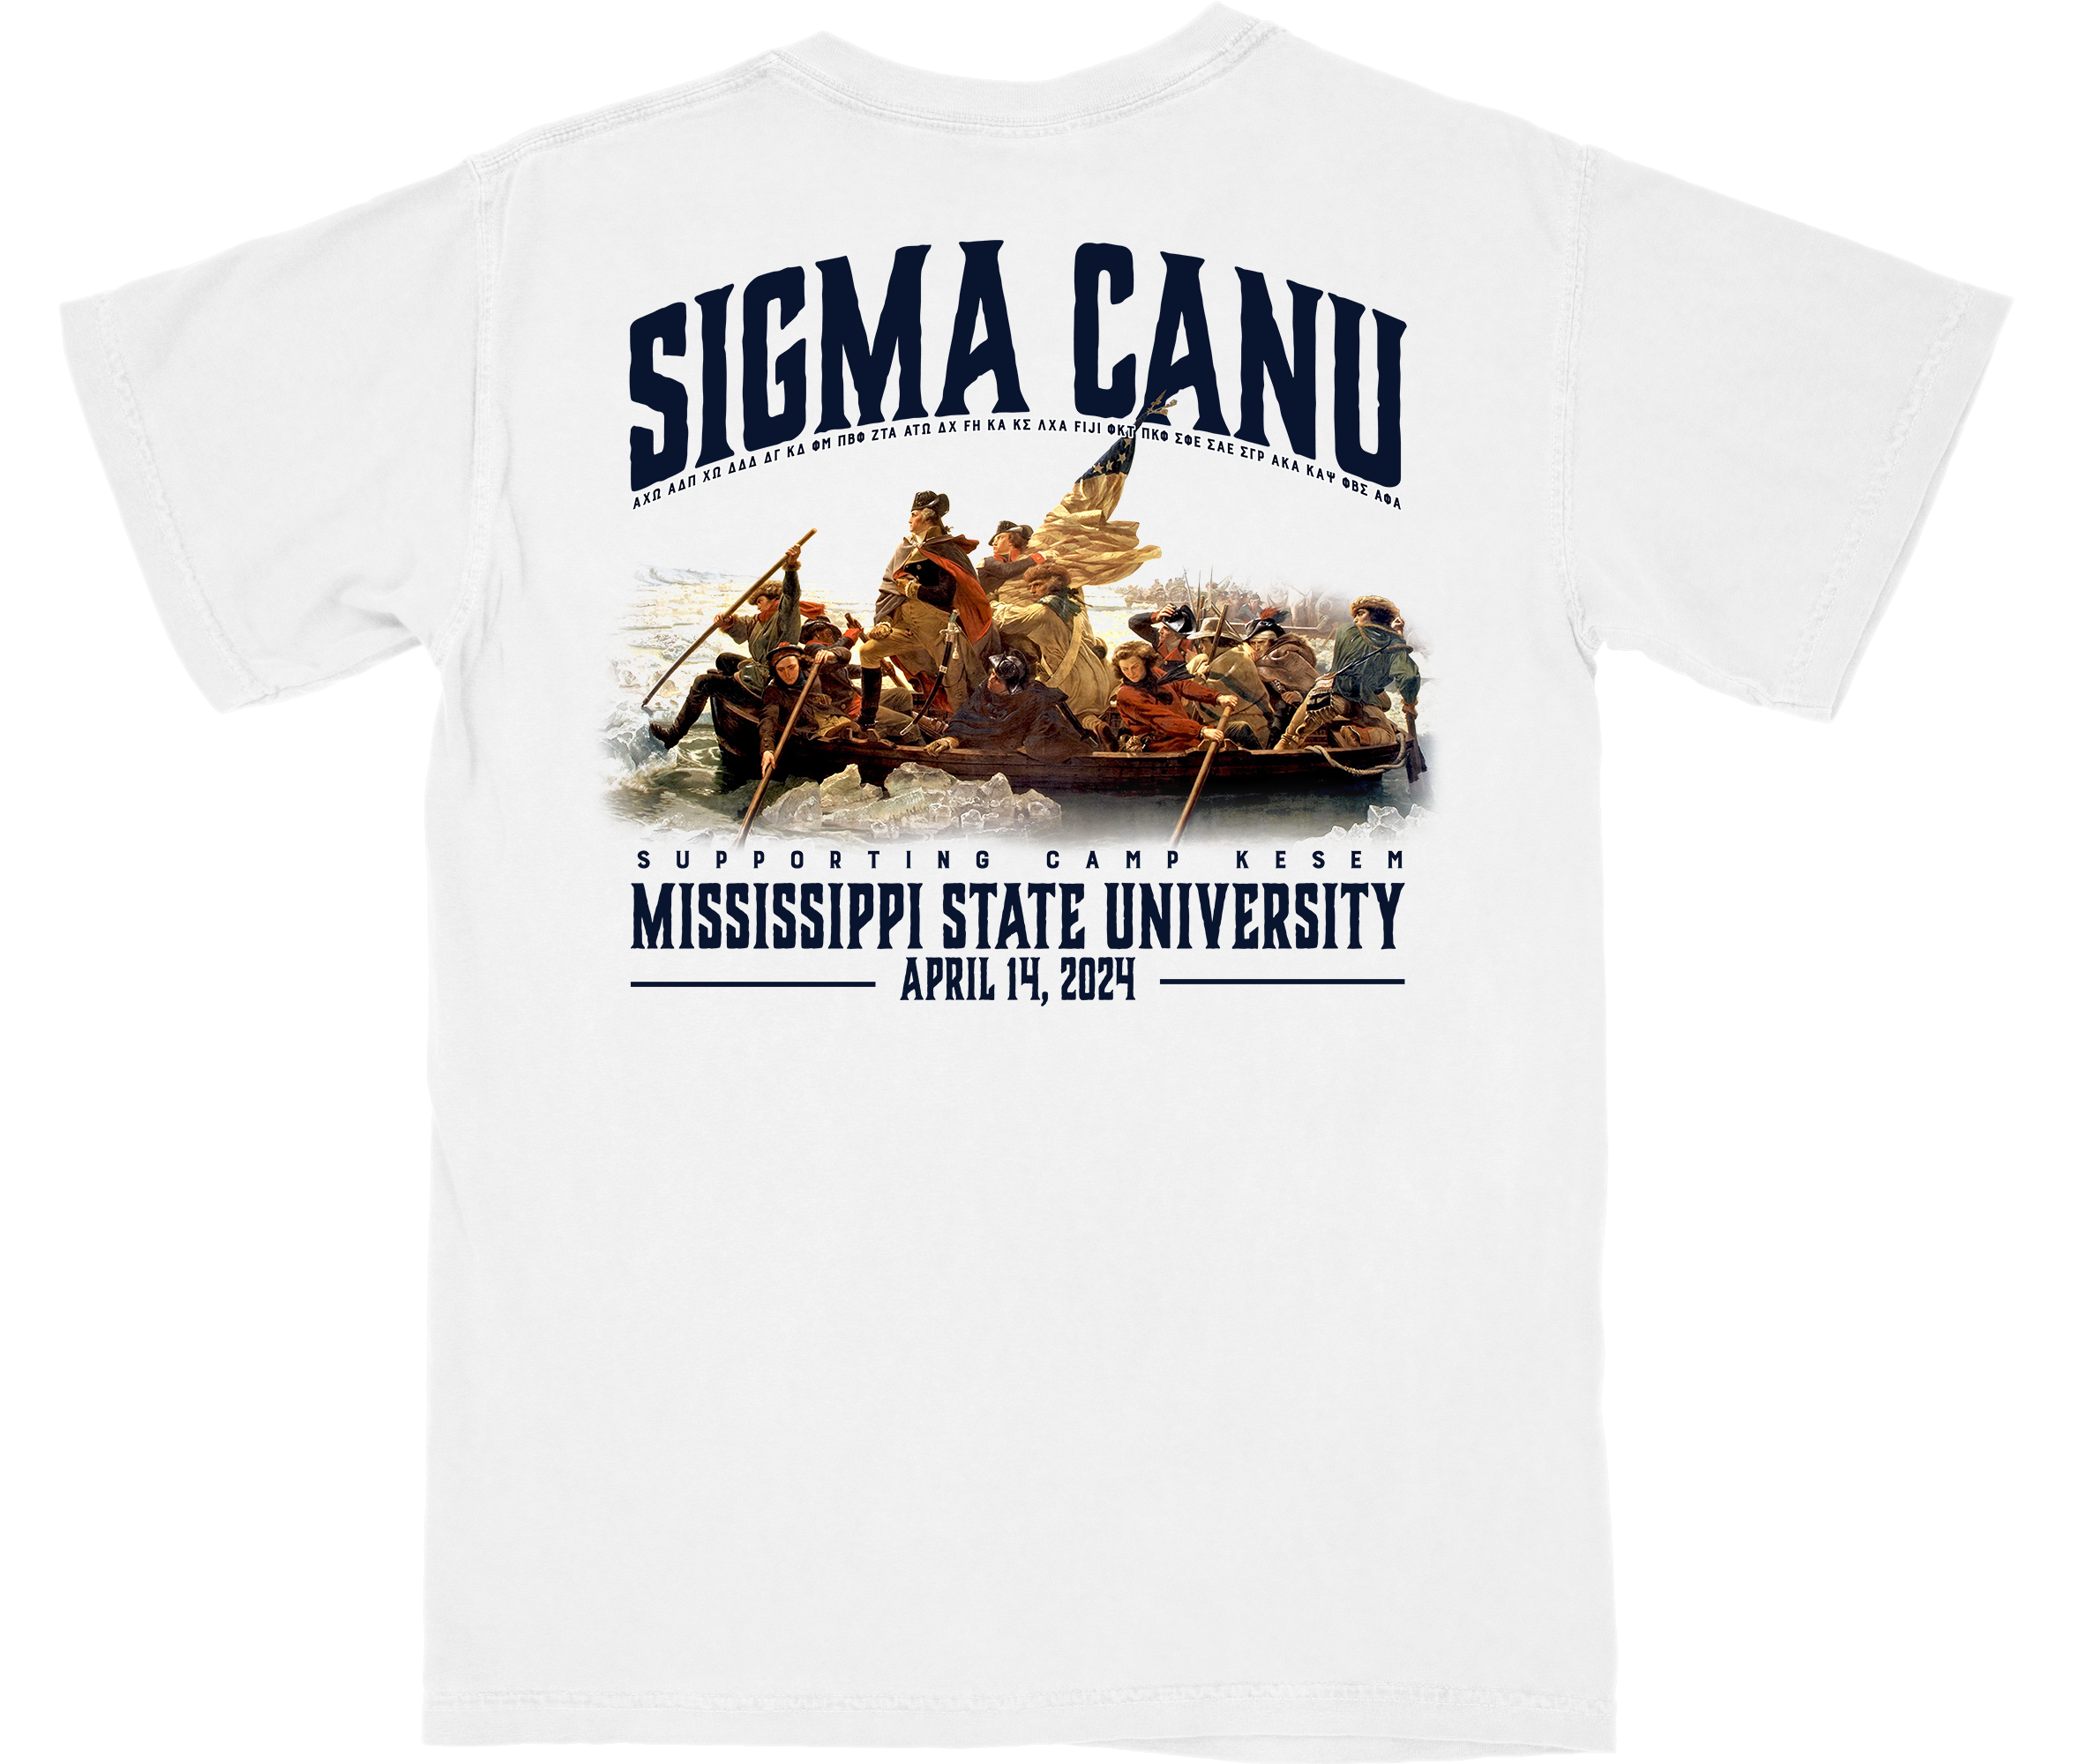 Sigma Canu Shirt